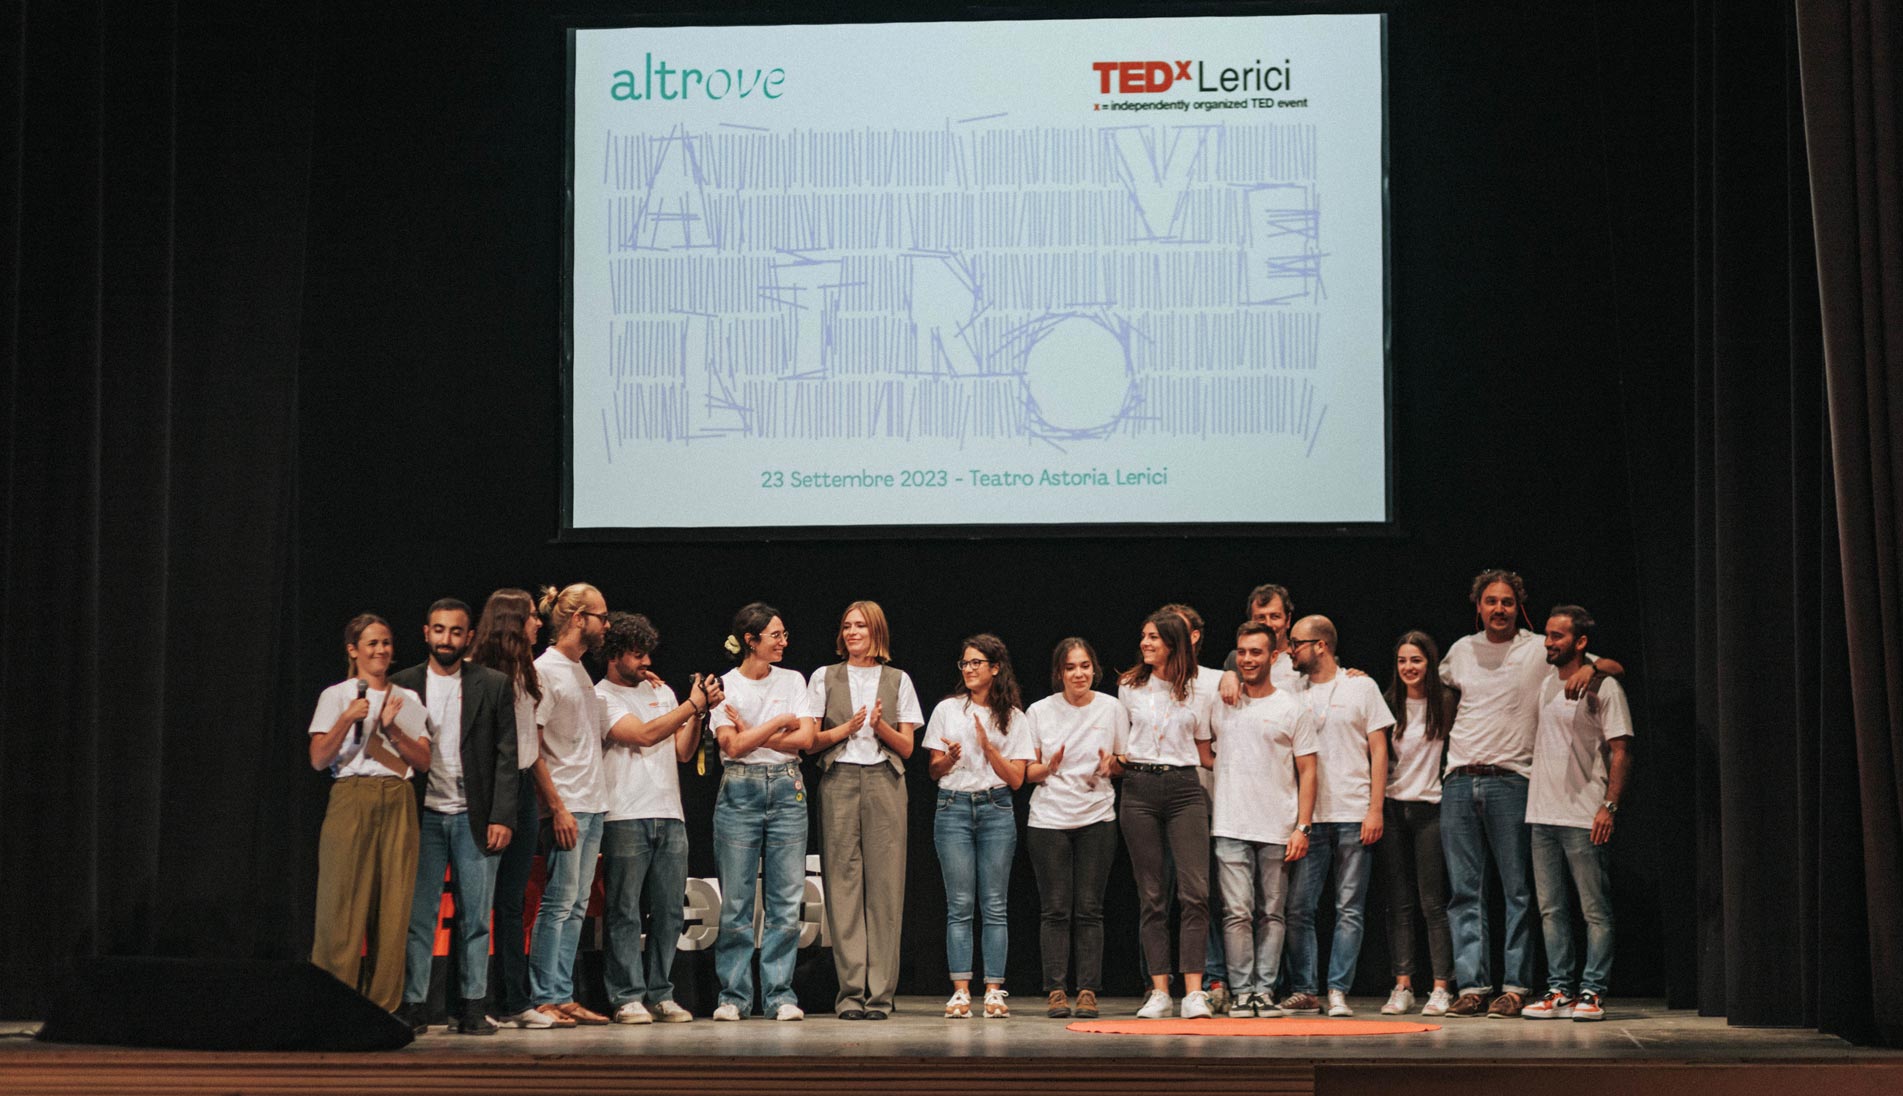 TEDx Lerici